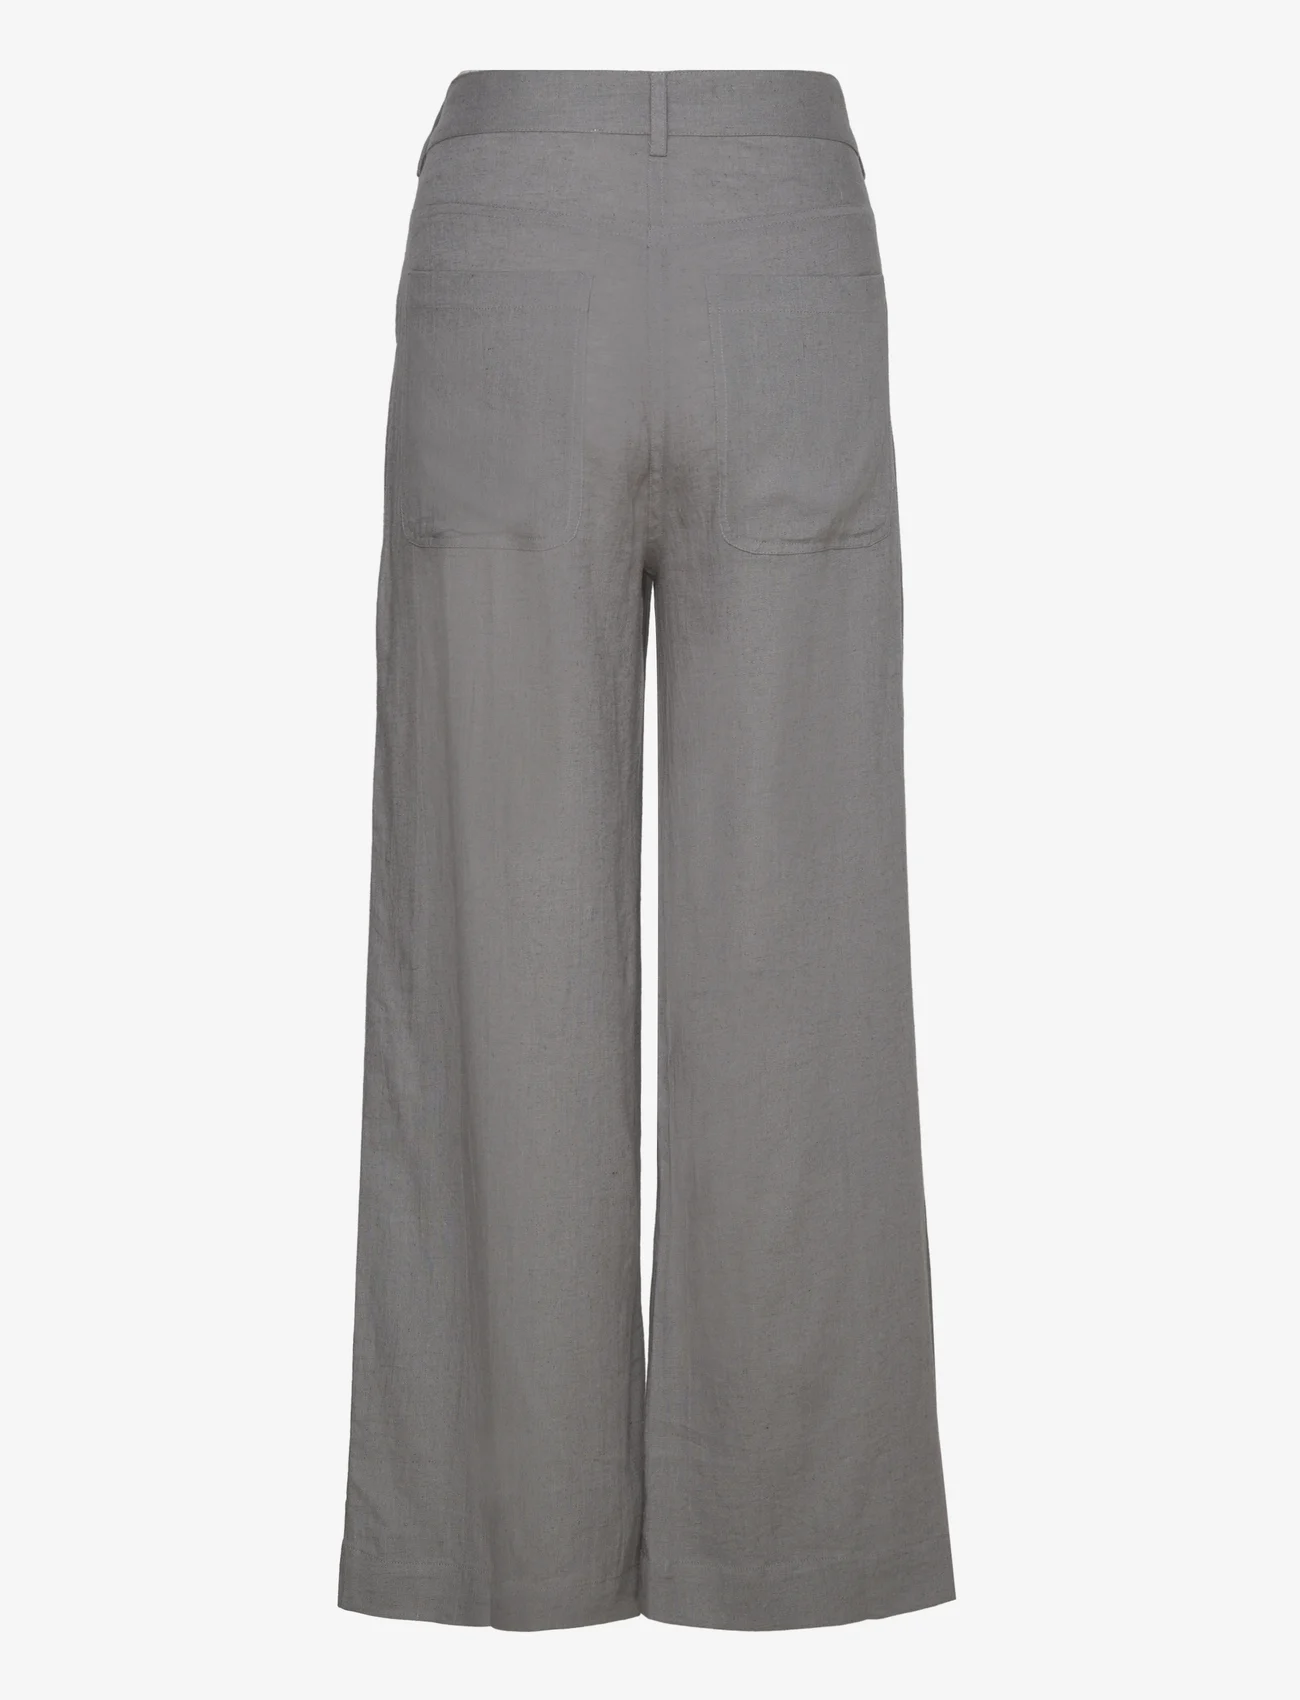 Sofie Schnoor - Trousers - linen trousers - steel grey - 1